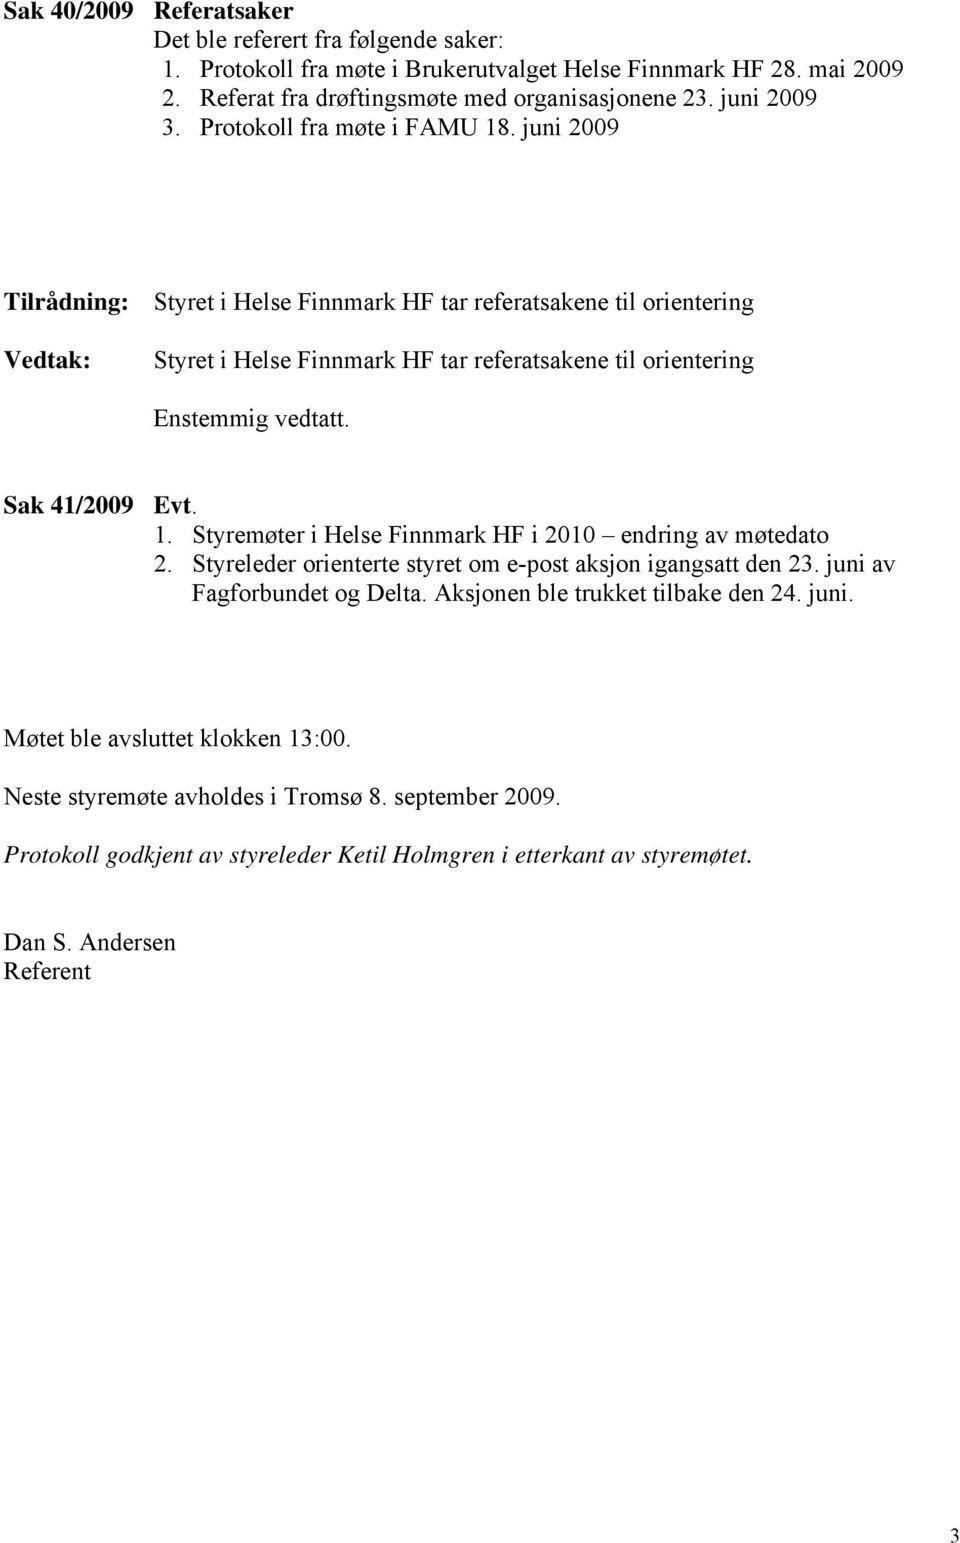 Sak 41/2009 Evt. 1. Styremøter i Helse Finnmark HF i 2010 endring av møtedato 2. Styreleder orienterte styret om e-post aksjon igangsatt den 23. juni av Fagforbundet og Delta.